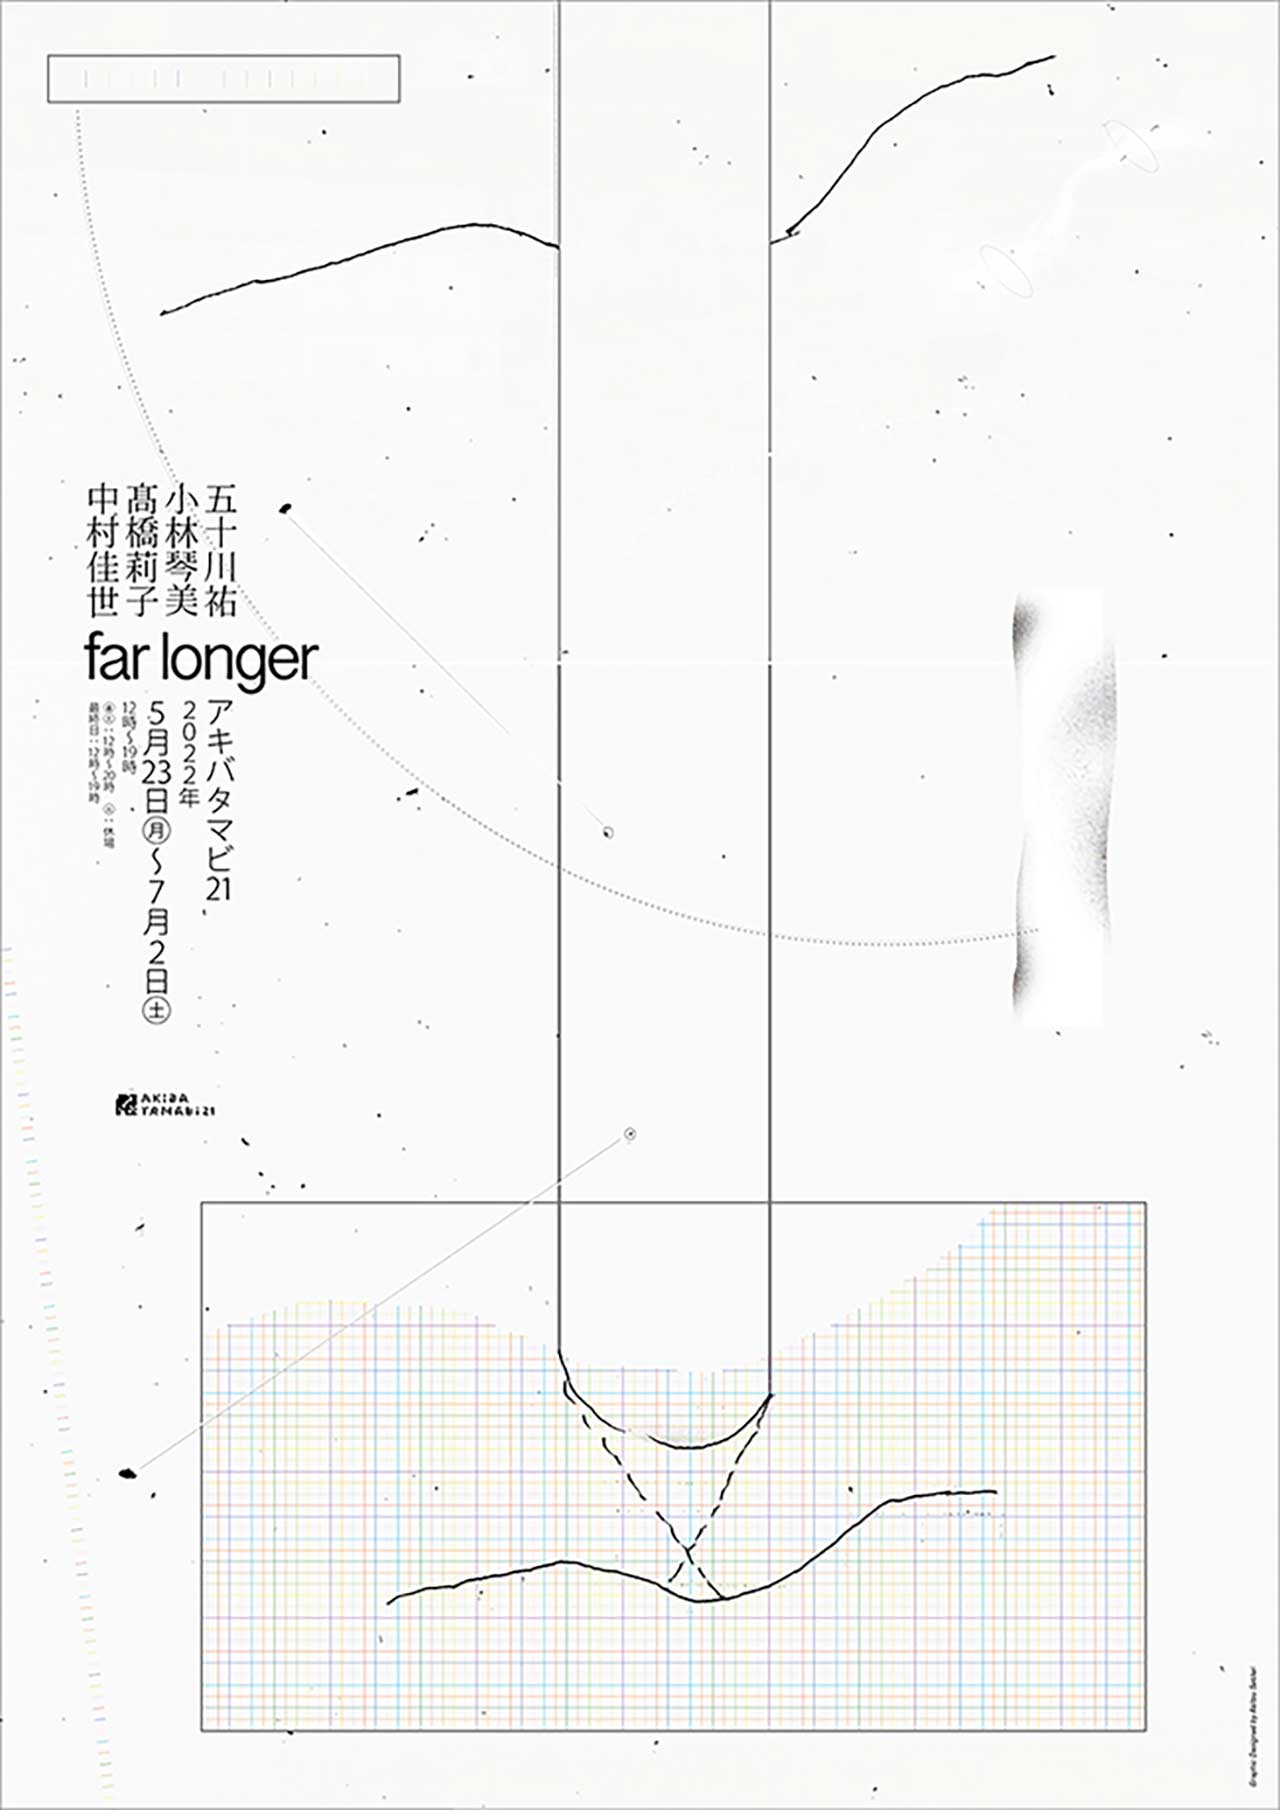 アキバタマビ 21 第 97回展覧会「far longer」